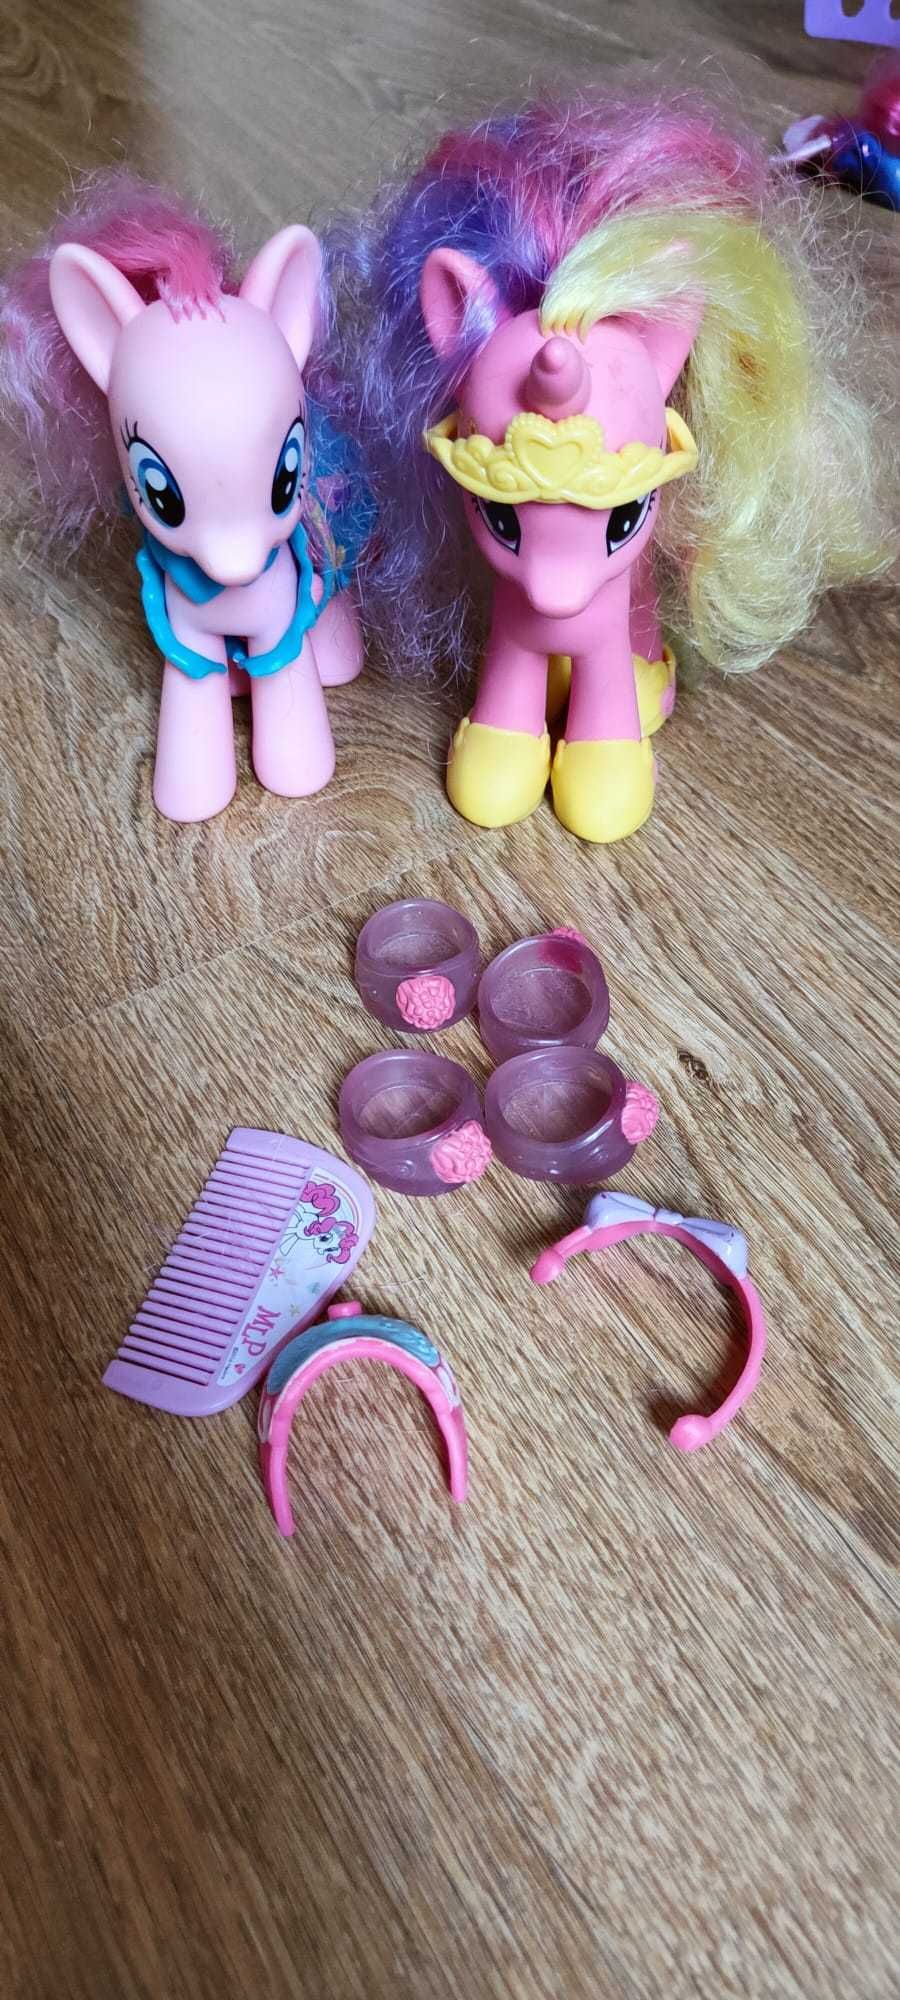 My Little Pony - 2 Kucyki (Pinkie Pie i Candance) + akcesoria